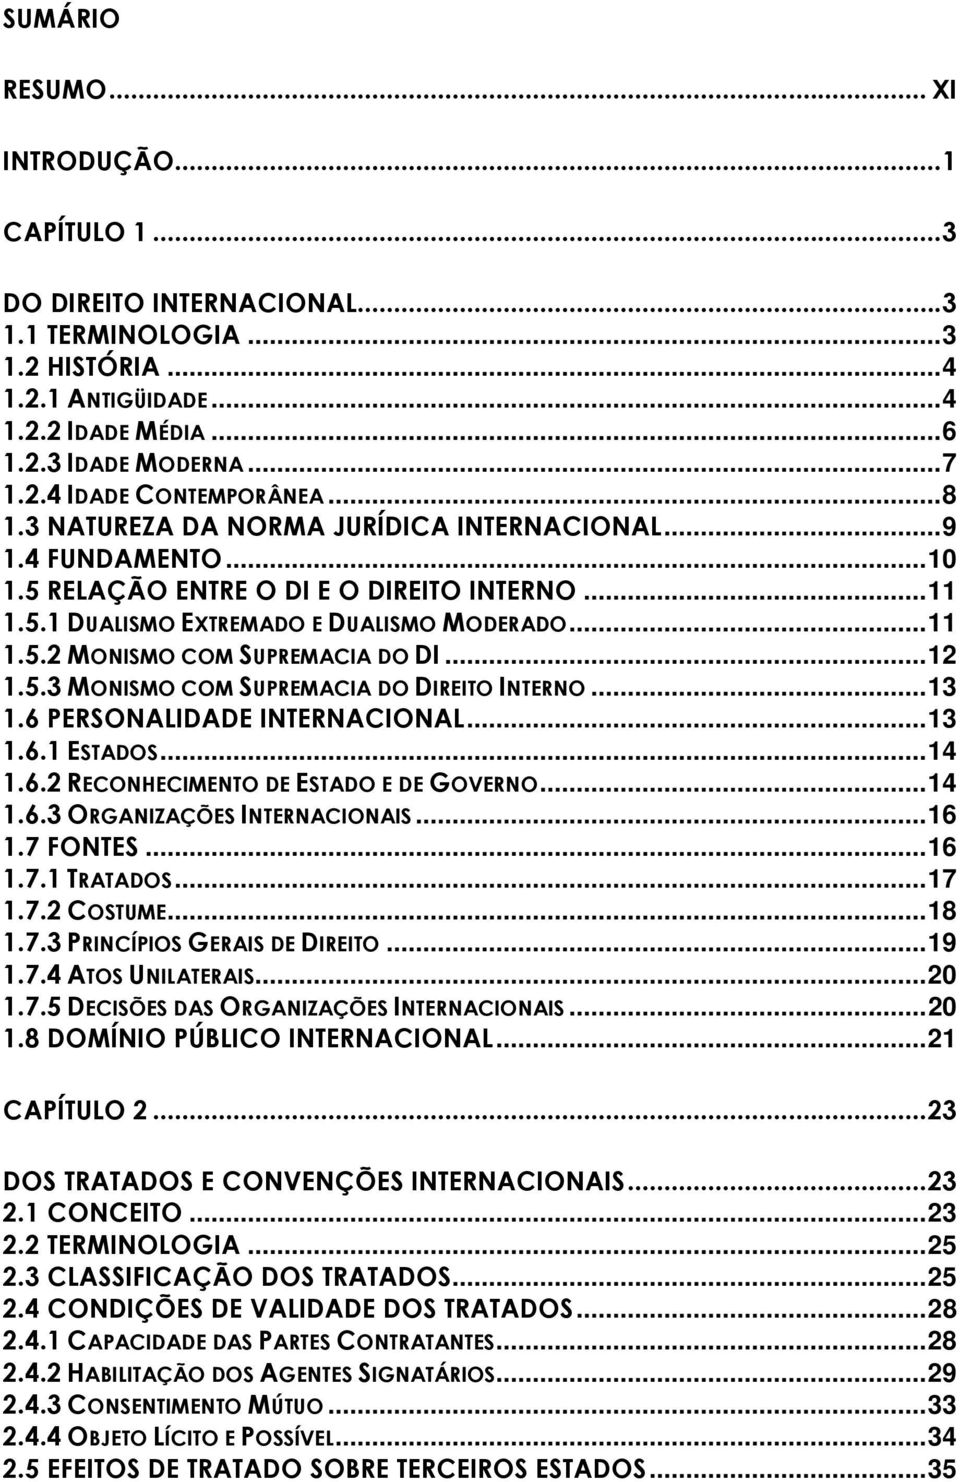 .. 12 1.5.3 MONISMO COM SUPREMACIA DO DIREITO INTERNO... 13 1.6 PERSONALIDADE INTERNACIONAL... 13 1.6.1 ESTADOS... 14 1.6.2 RECONHECIMENTO DE ESTADO E DE GOVERNO... 14 1.6.3 ORGANIZAÇÕES INTERNACIONAIS.